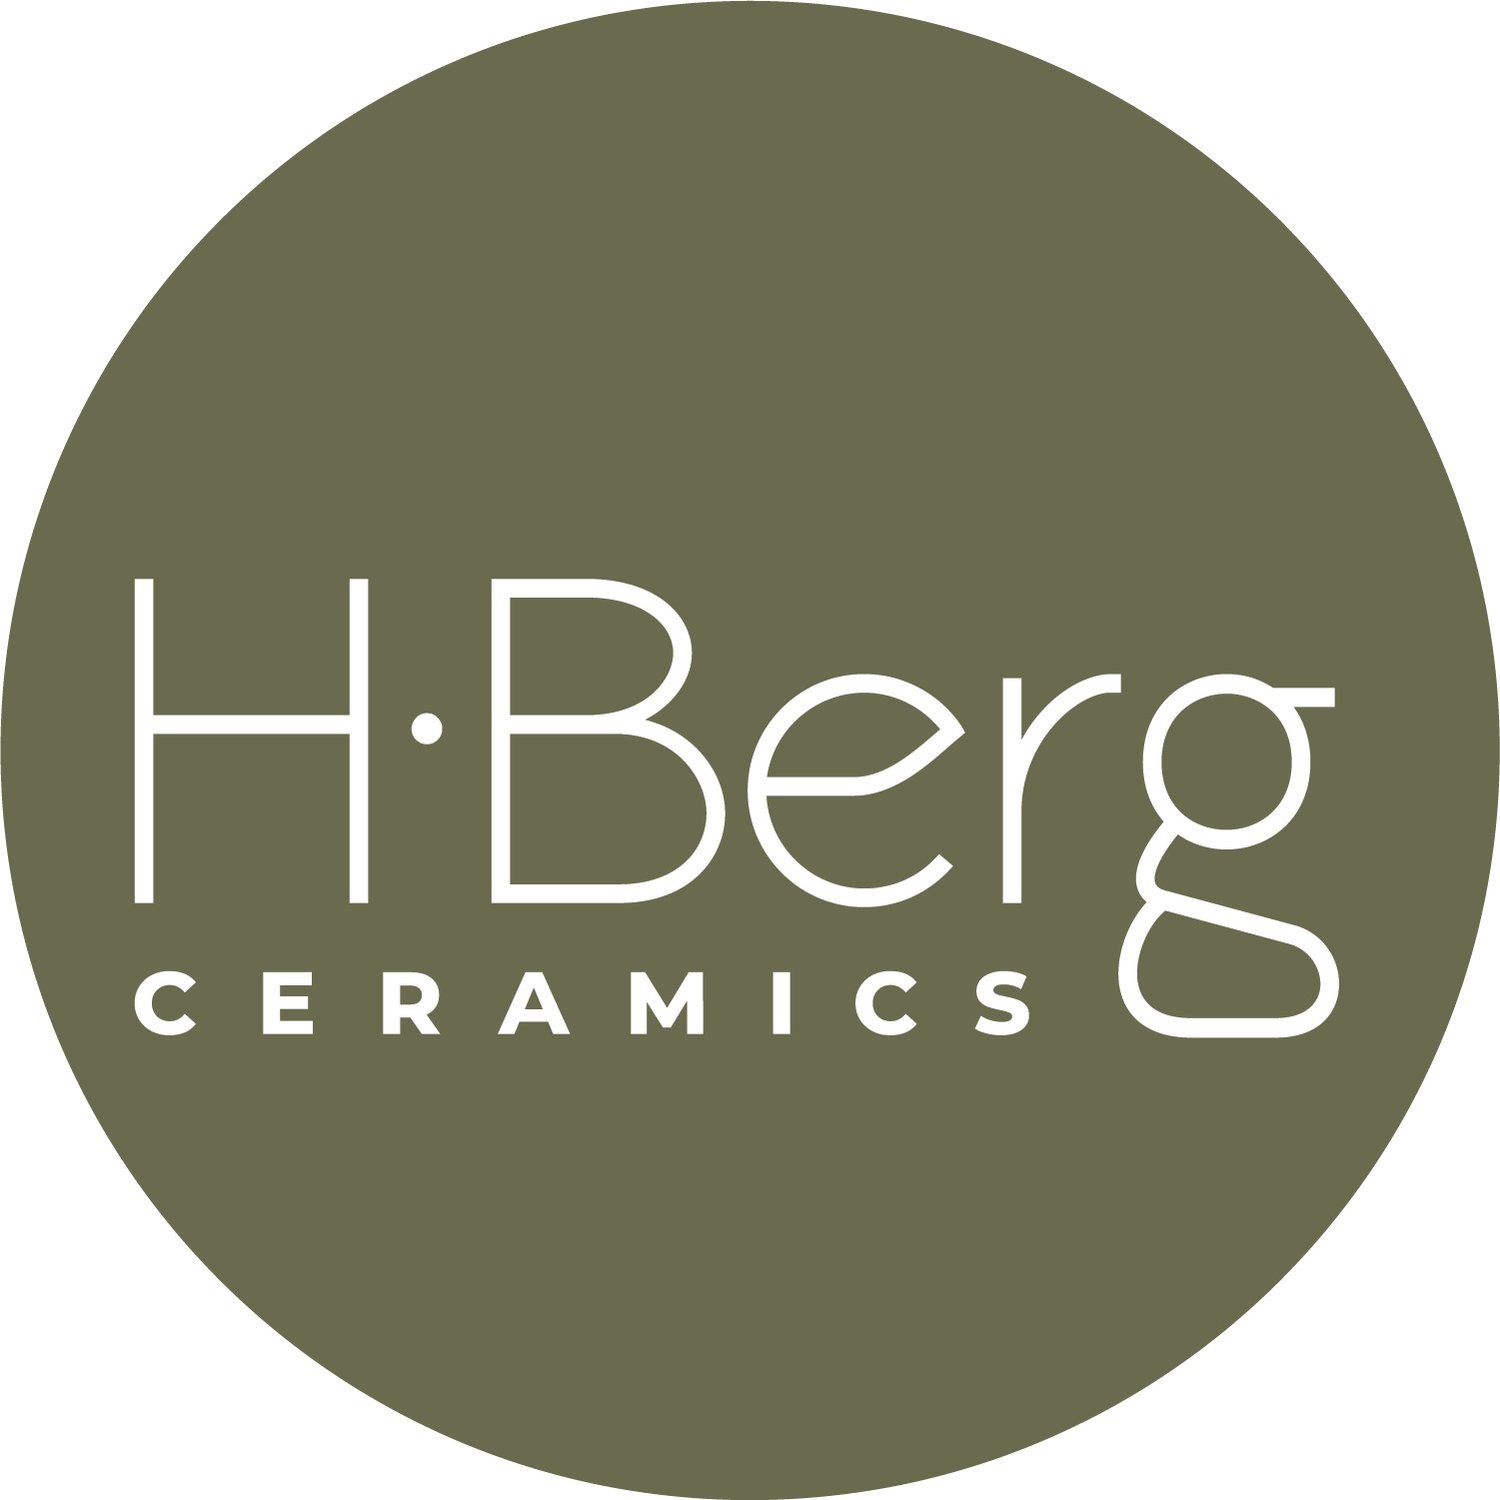 H. Berg Ceramics